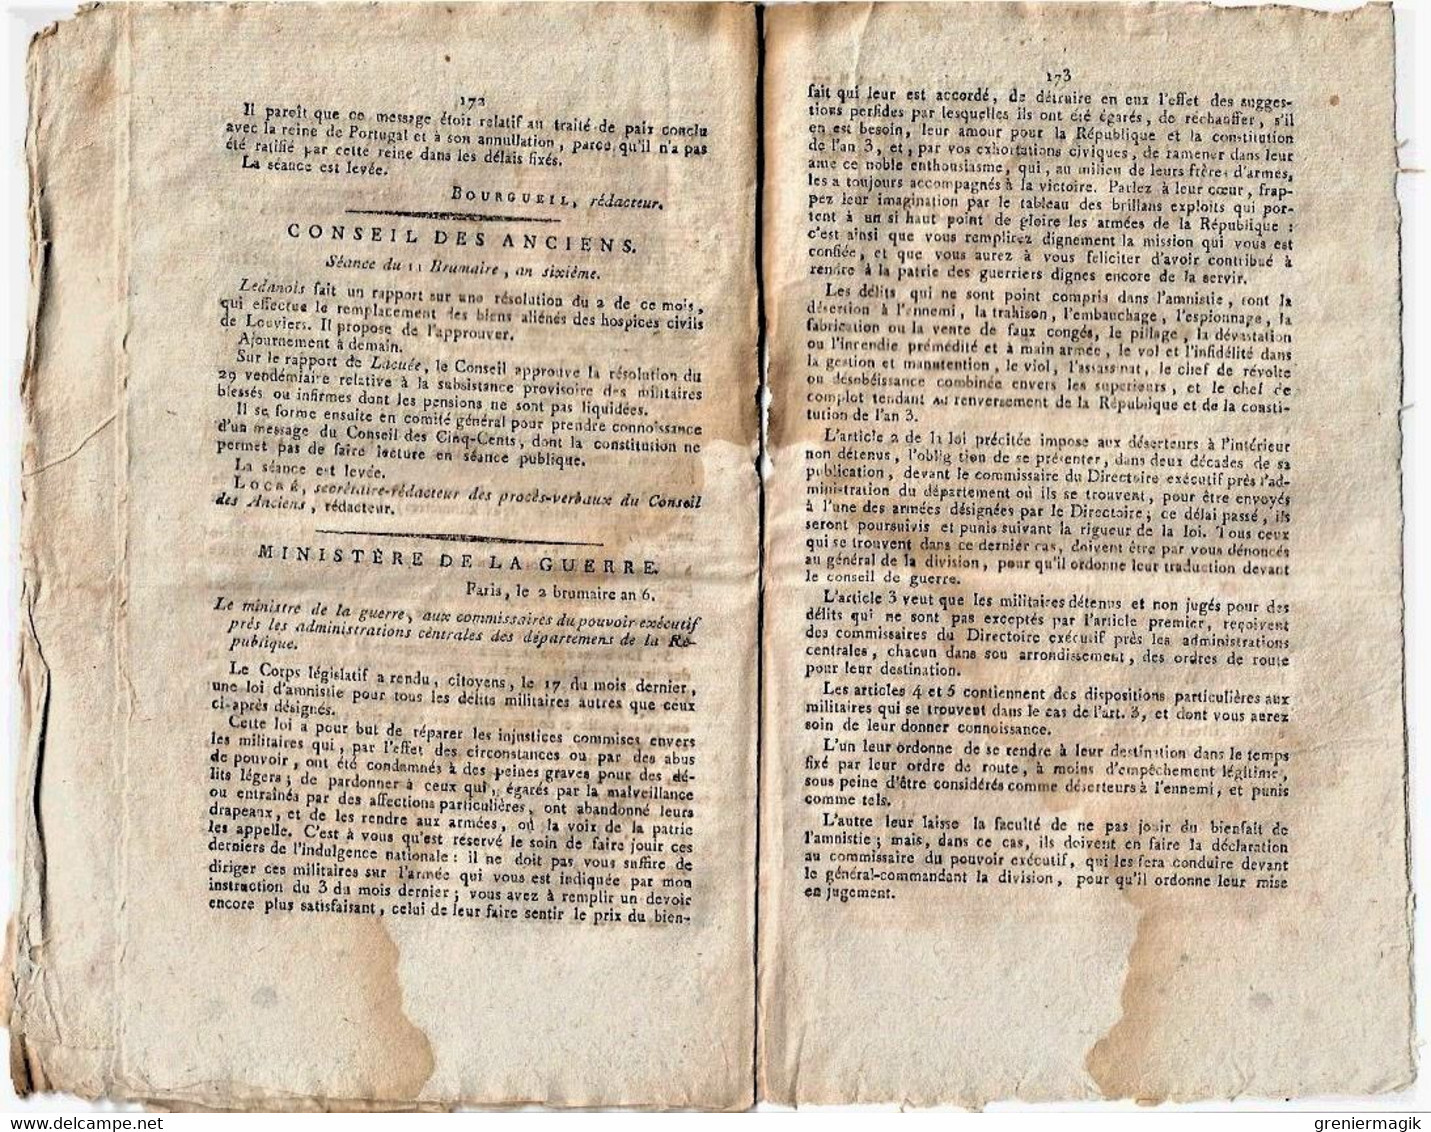 Journal des débats et lois brumaire an VI 1797 Général Bonaparte Rastadt/Amnistie délits militaires/Combat du 11 octobre